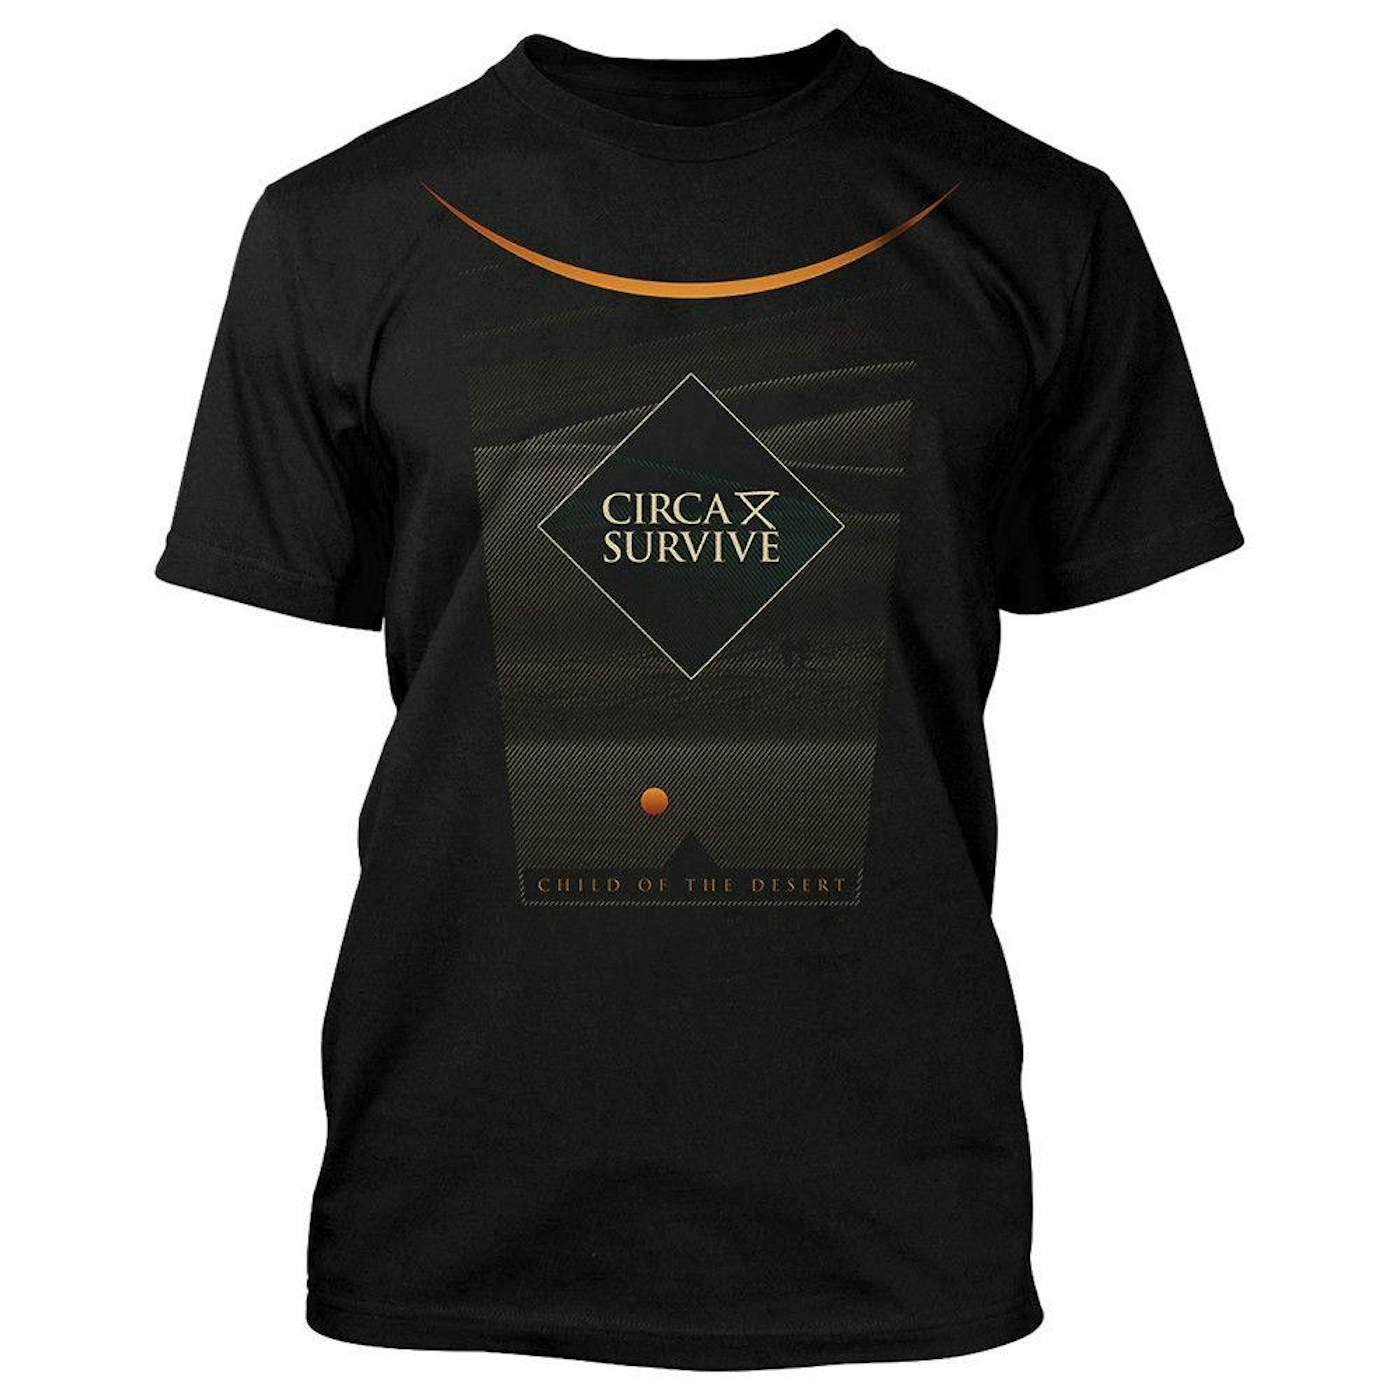 Circa Survive Desert Child T-Shirt